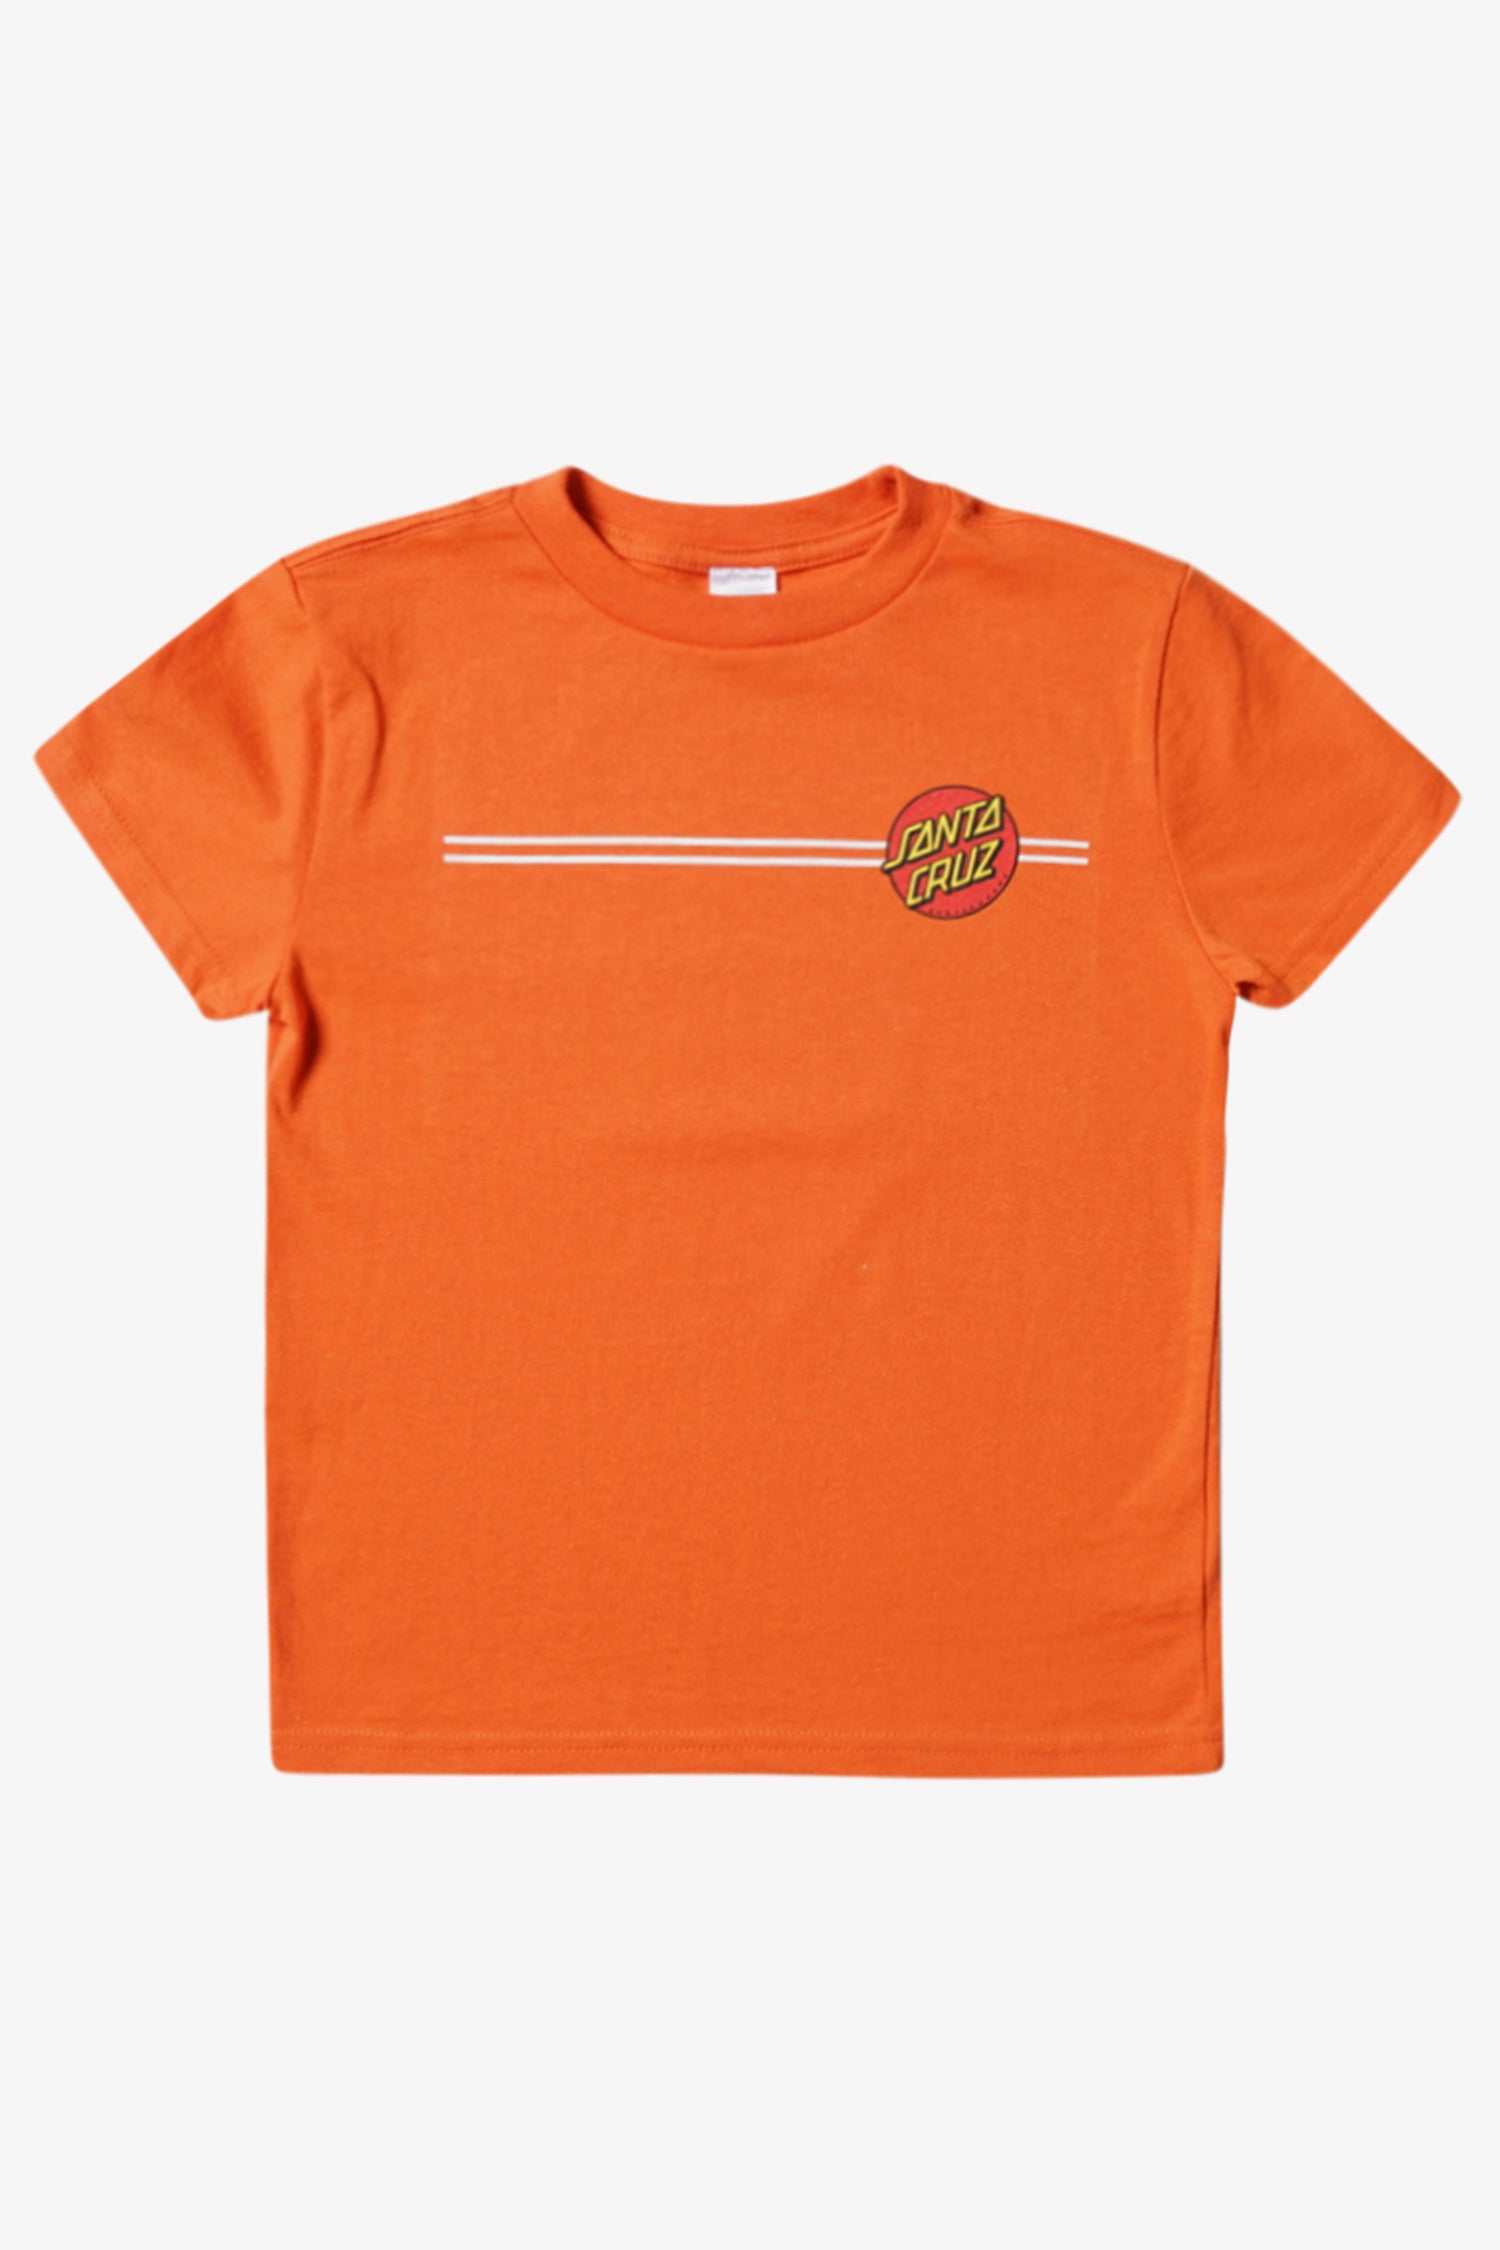 Selectshop FRAME - SANTA CRUZ Classic Dot T-Shirt Kids Dubai